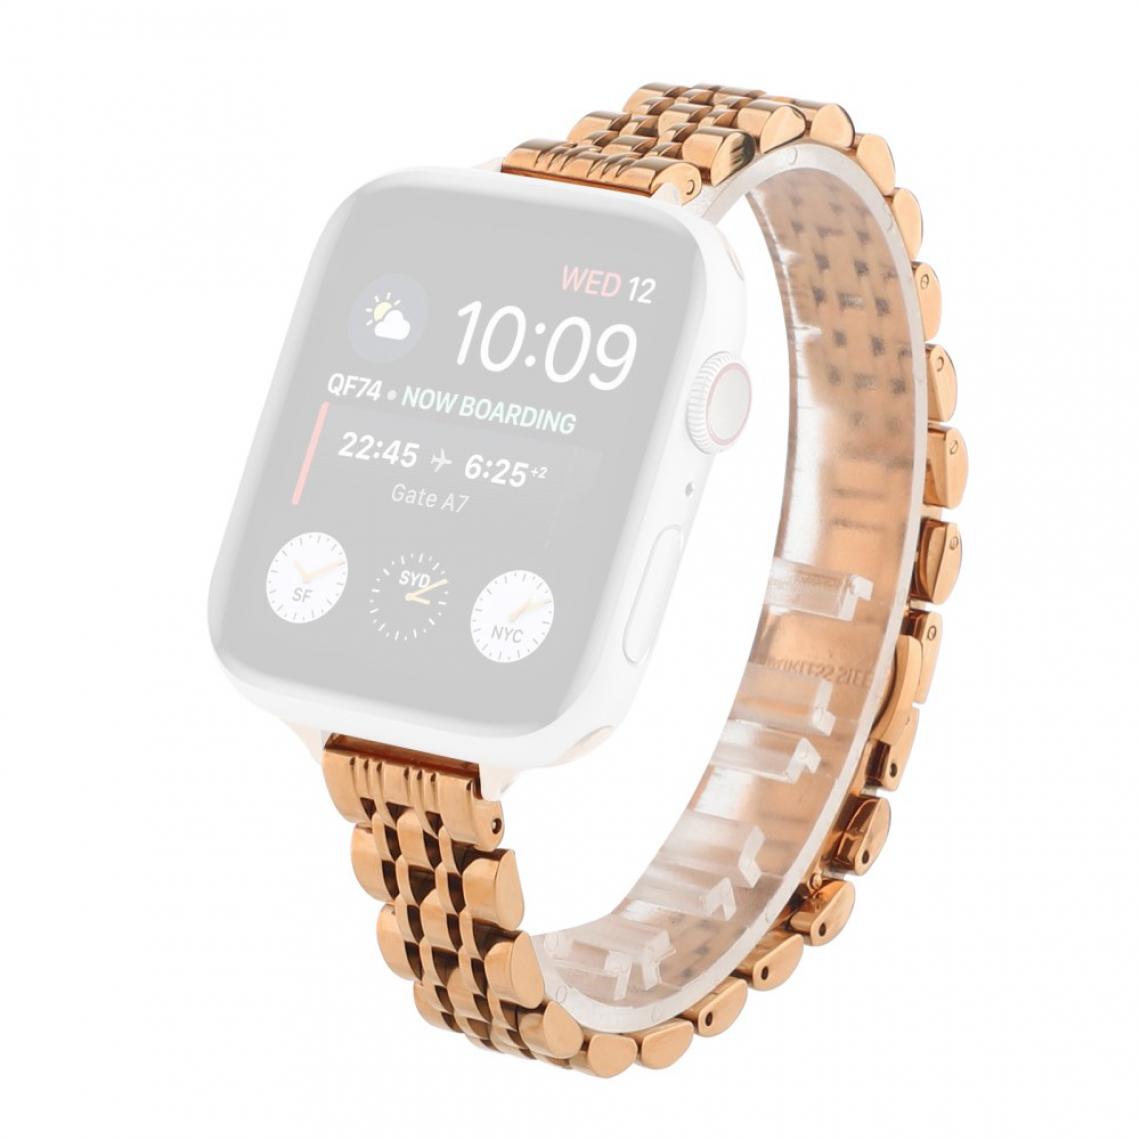 Other - Bracelet en métal or rose pour votre Apple Watch Series 6/SE/5/4 40mm/Series 3/2/1 38mm - Accessoires bracelet connecté